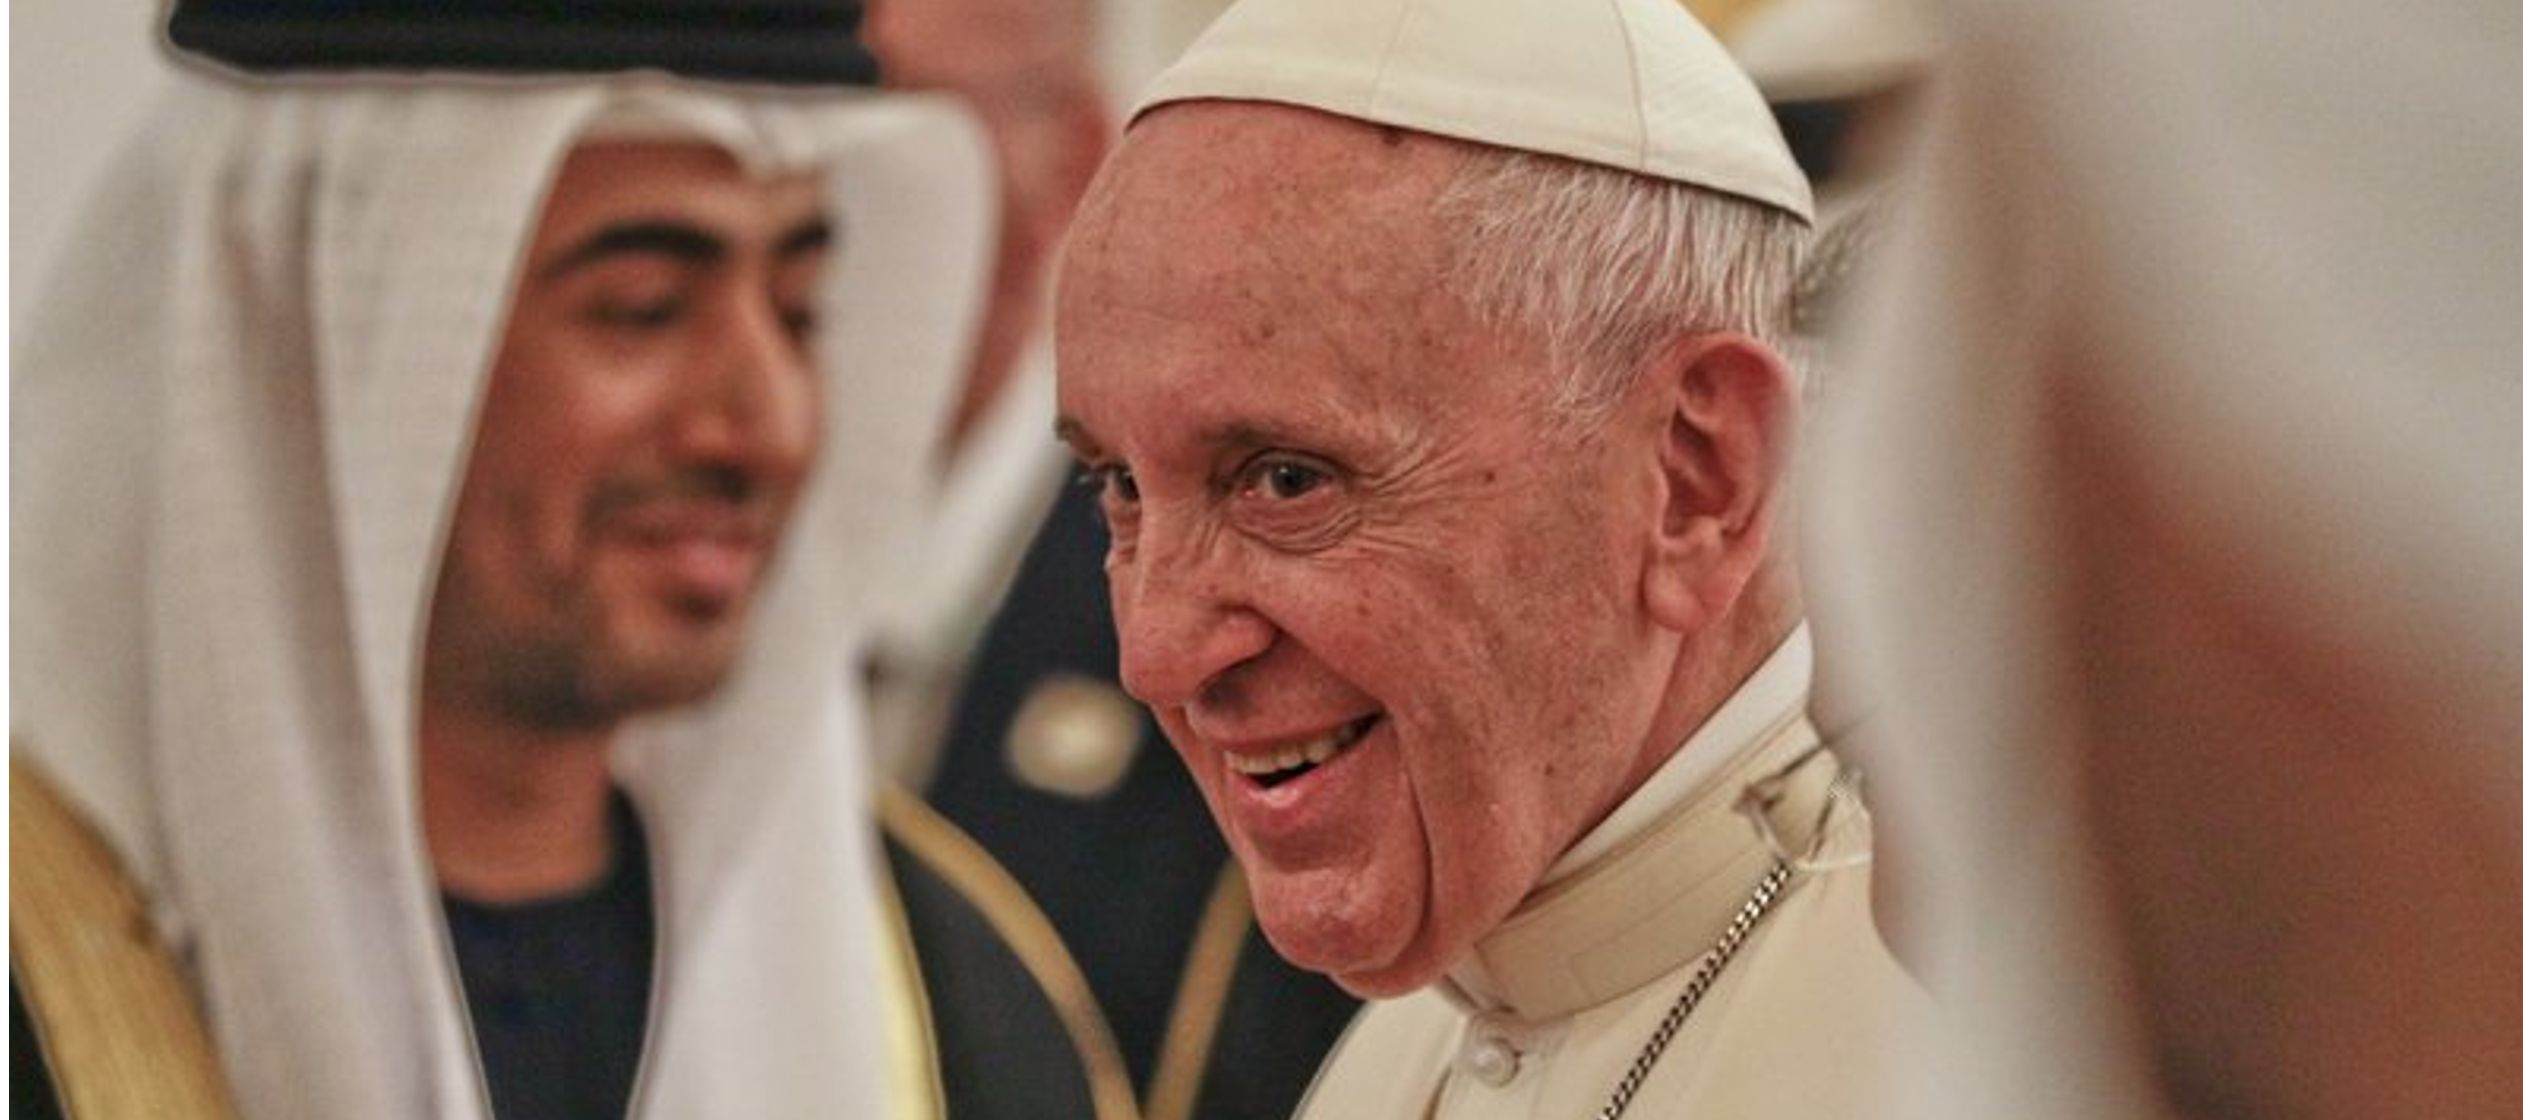 El pontífice llegó al palacio presidencial de Abu Dabi a bordo de un sencillo auto...